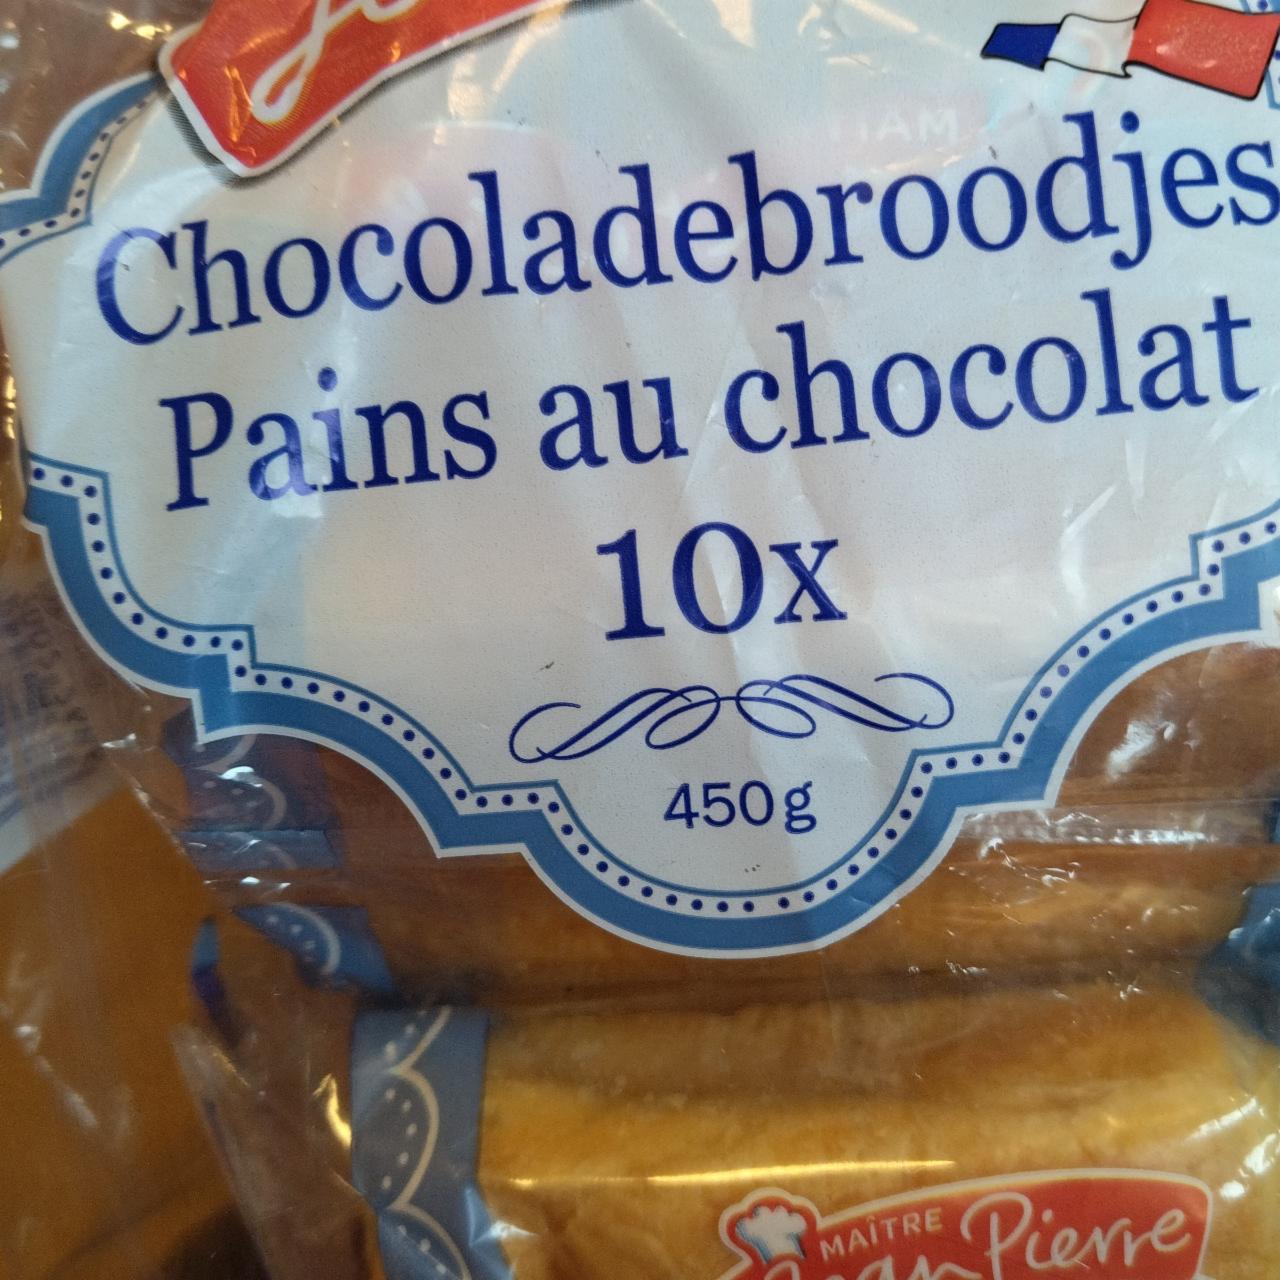 Zdjęcia - Chocoladebrodjes pains au chocolat